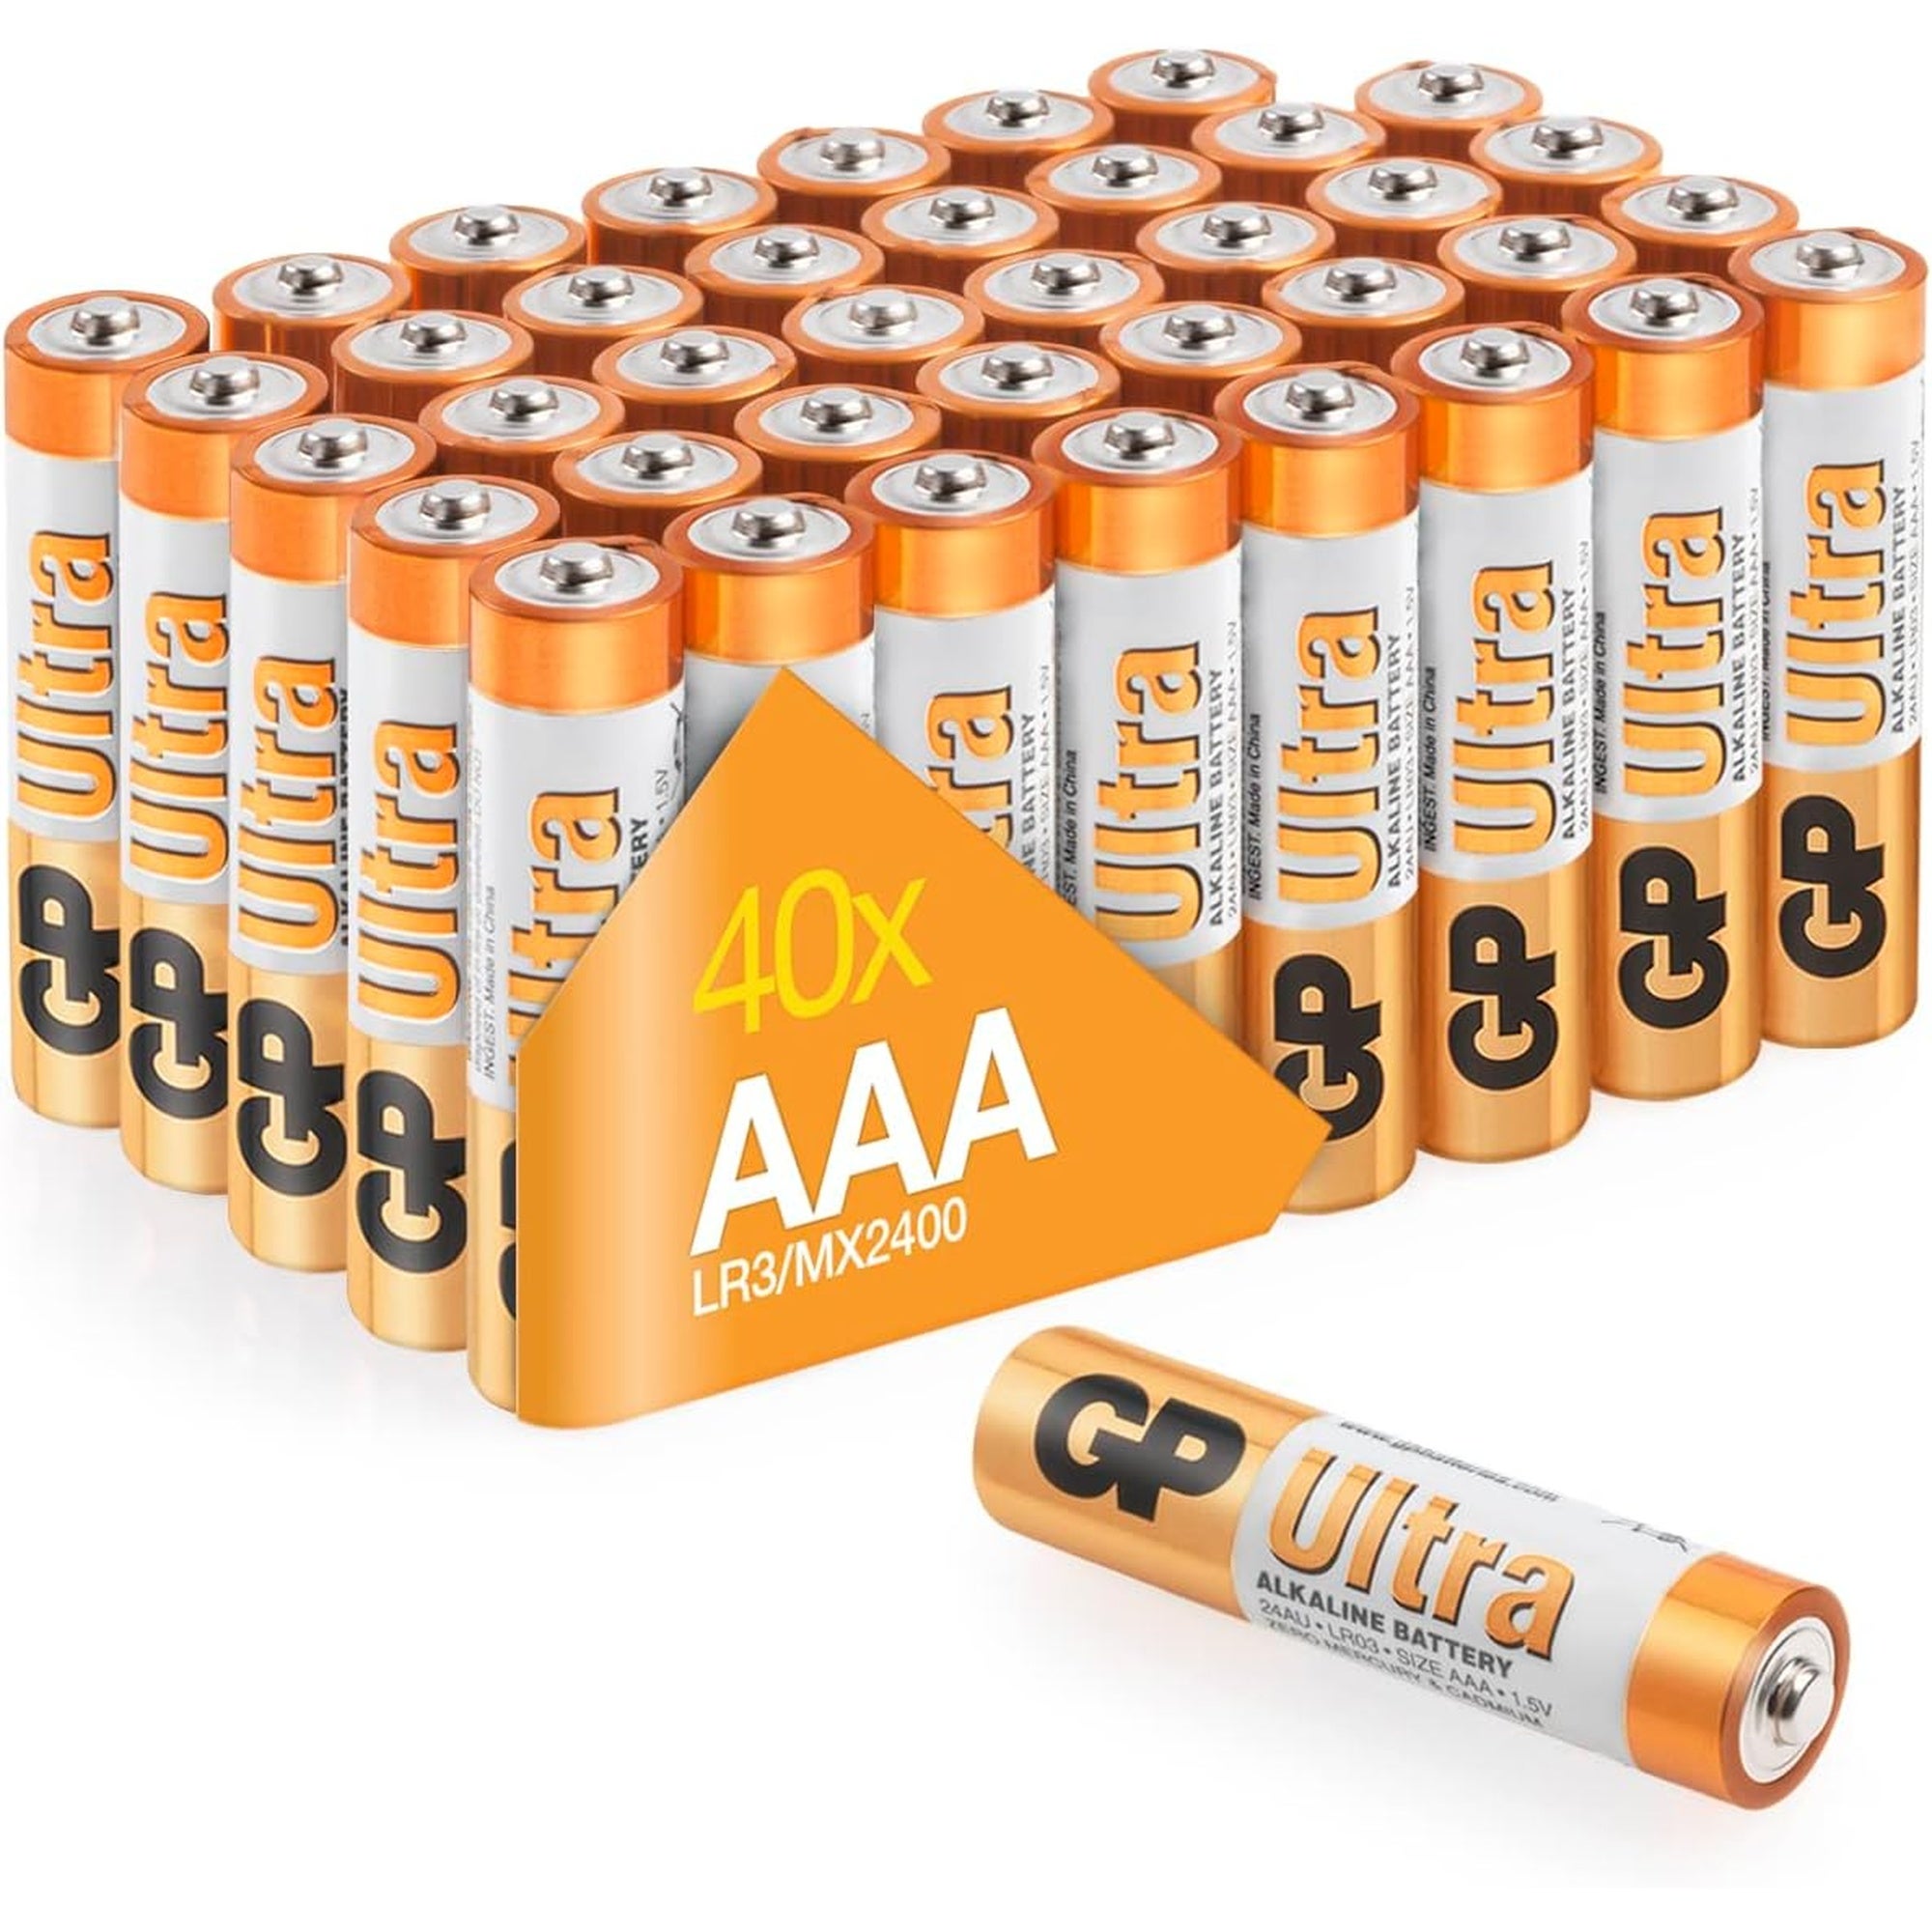 Piles AAA - Lot de 40 Piles, GP Ultra, Batteries Alcalines AAA LR03 1,5v, Longue durée, très puissantes, utilisation quotidienne